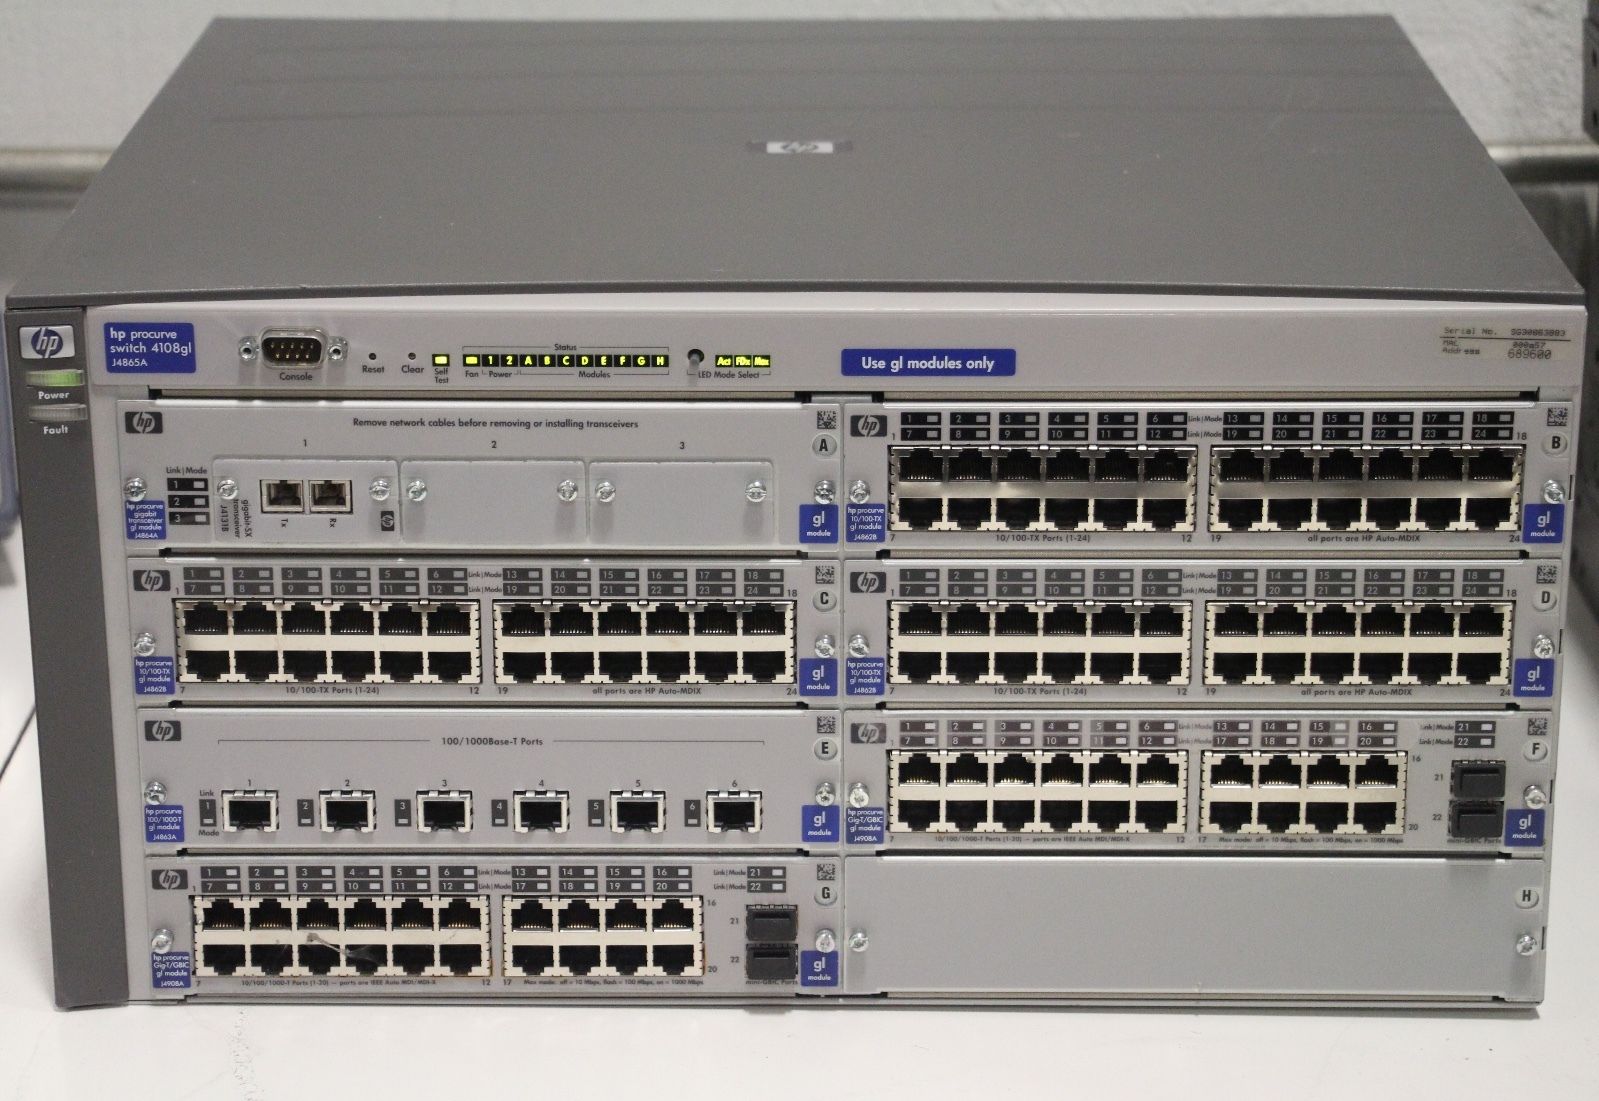 HP ProCurve J4865A 4108gl Switch w/ 3x 4862A 2x J4908A J4839 J4865A,HP,PLC